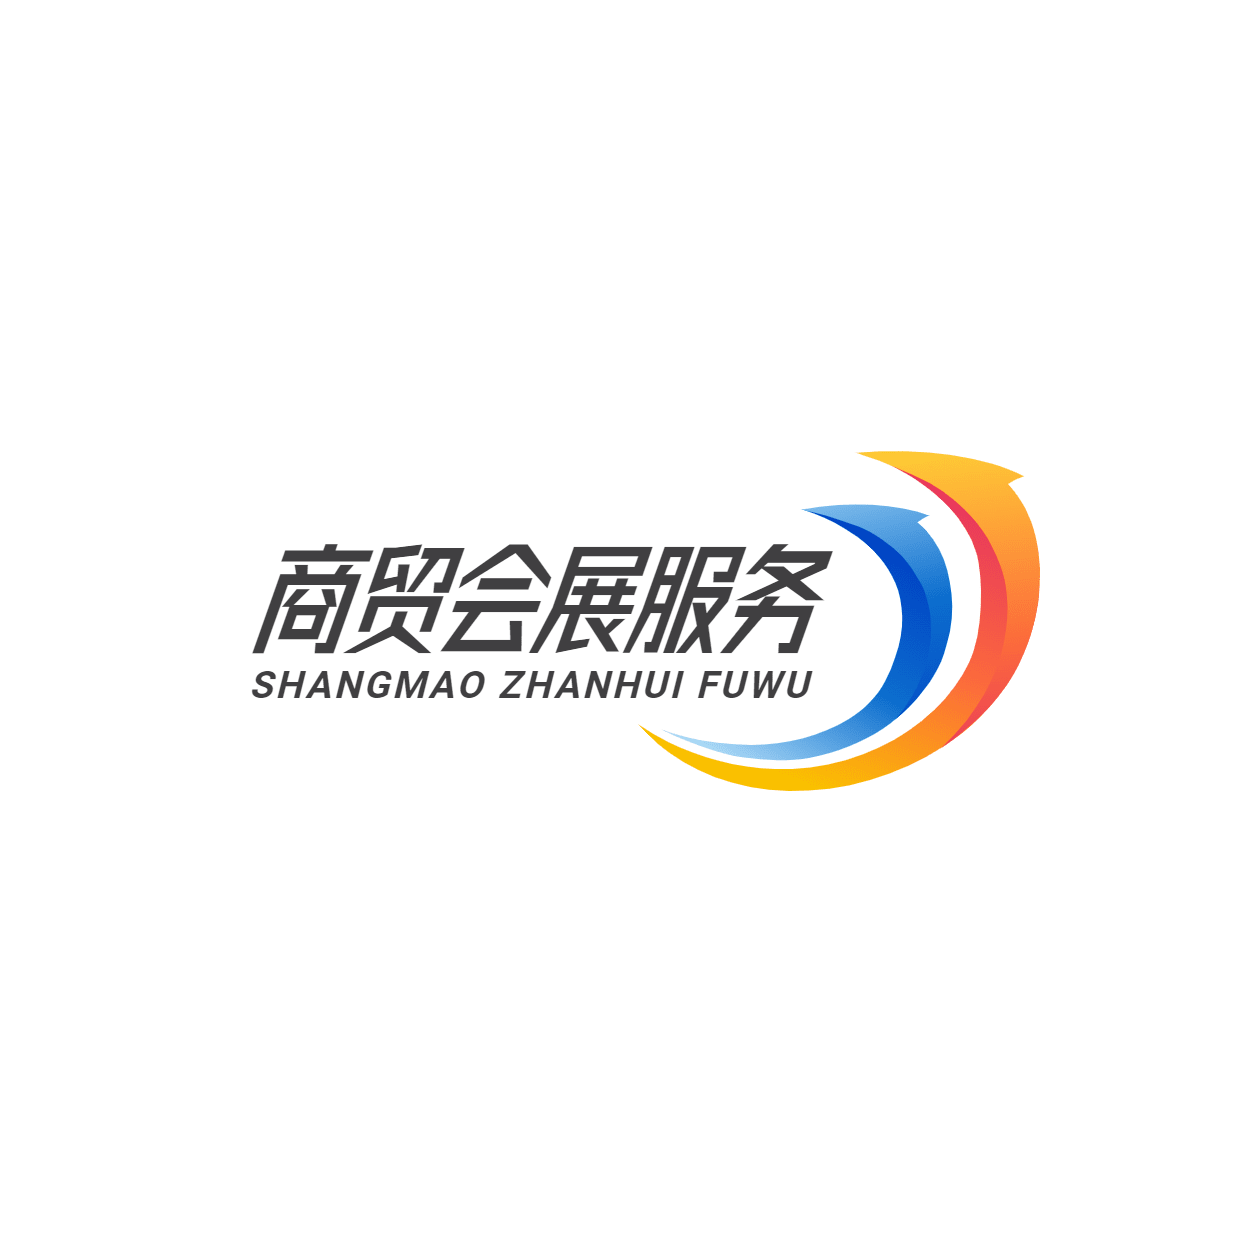 企业展览公司贸易治谈服务logo